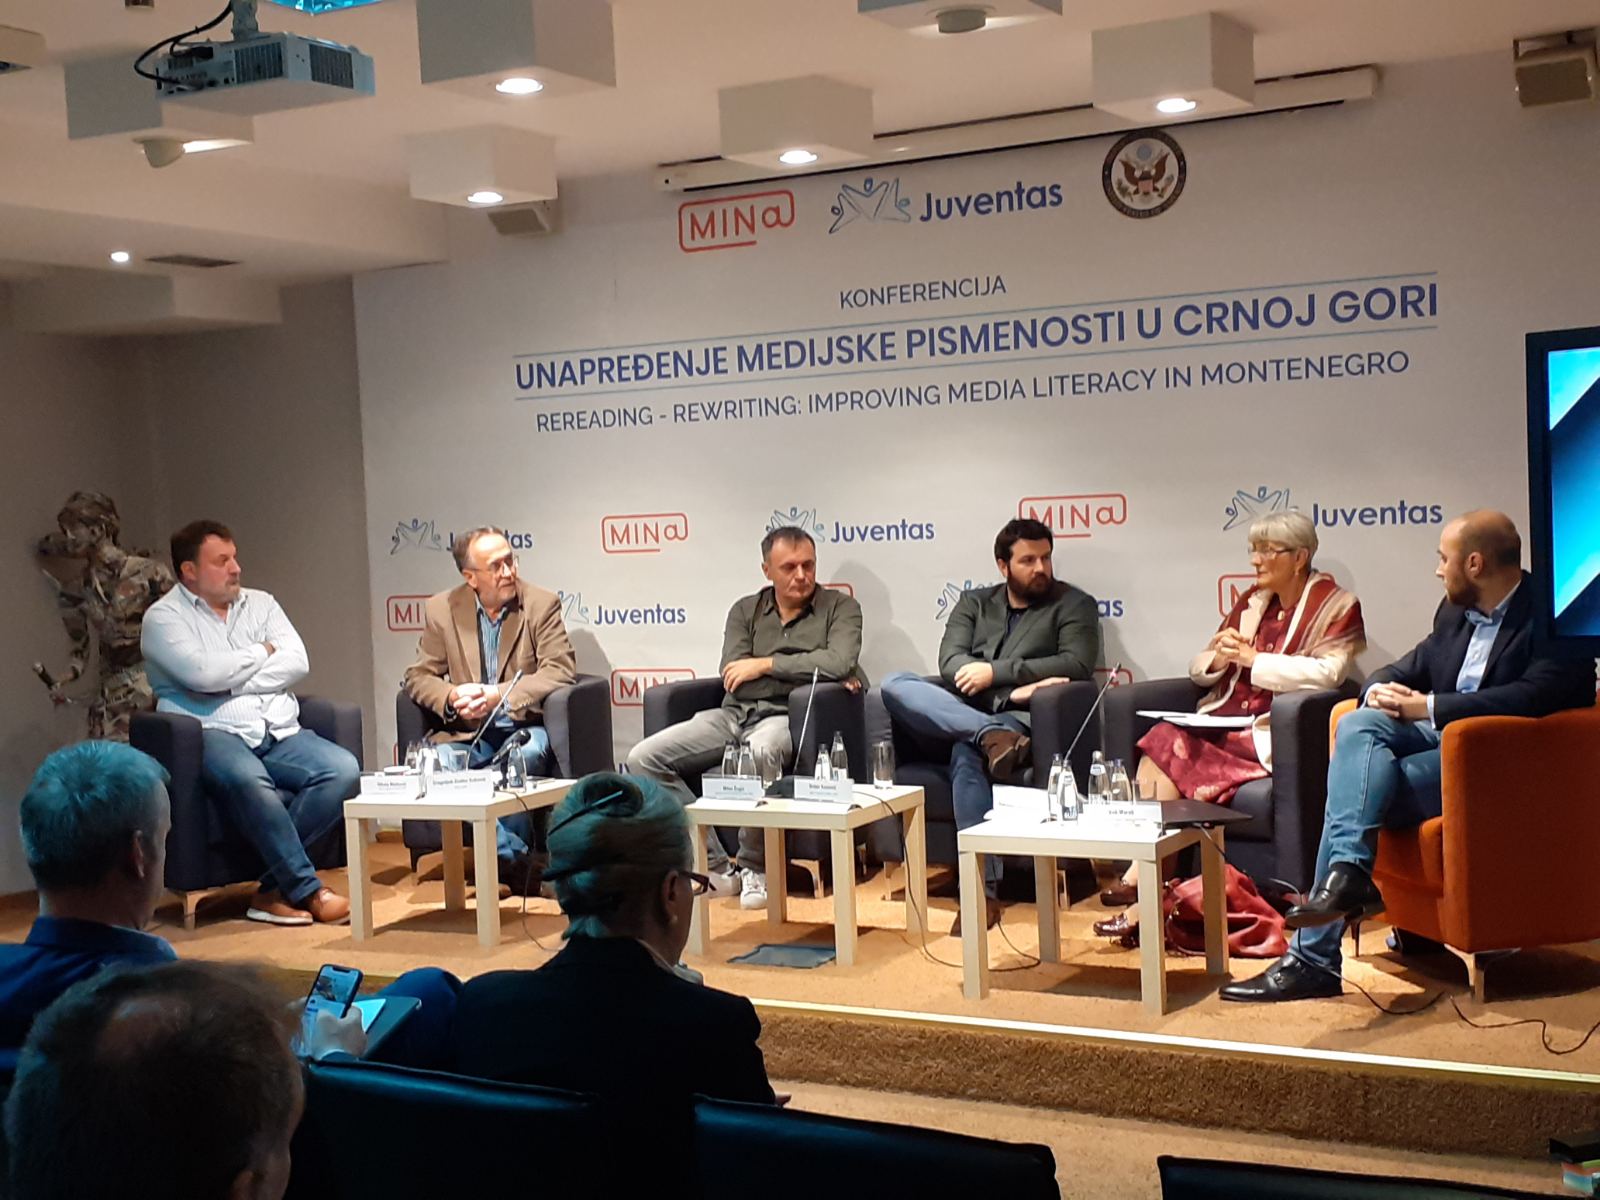 Konferencija "Unapređenje medijske pismenosti u Crnoj Gori"